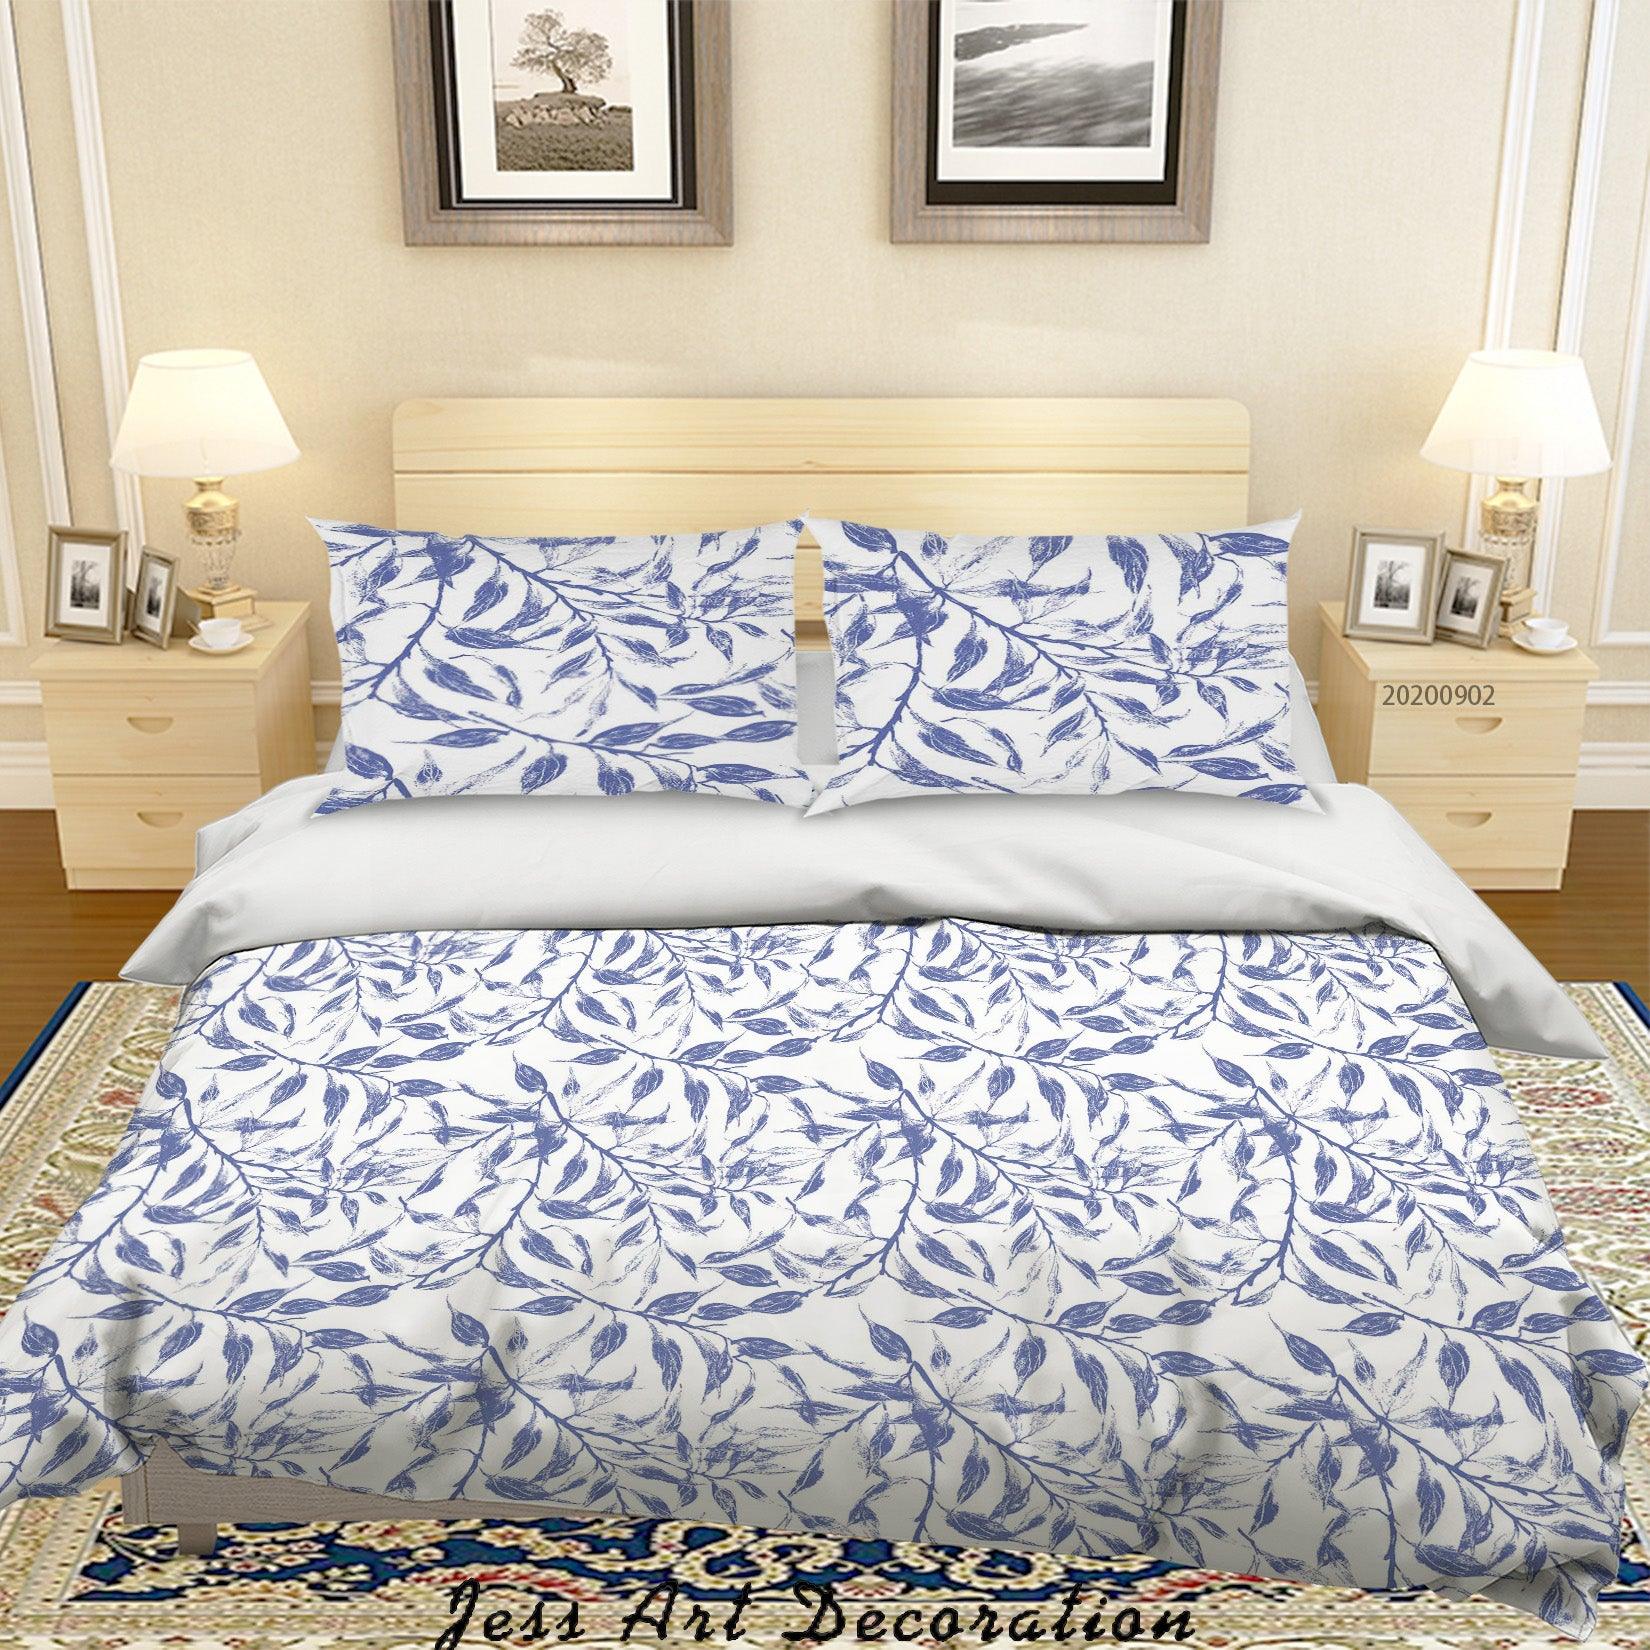 3D Watercolor Leaves Pattern Quilt Cover Set Bedding Set Duvet Cover Pillowcases WJ 1402- Jess Art Decoration